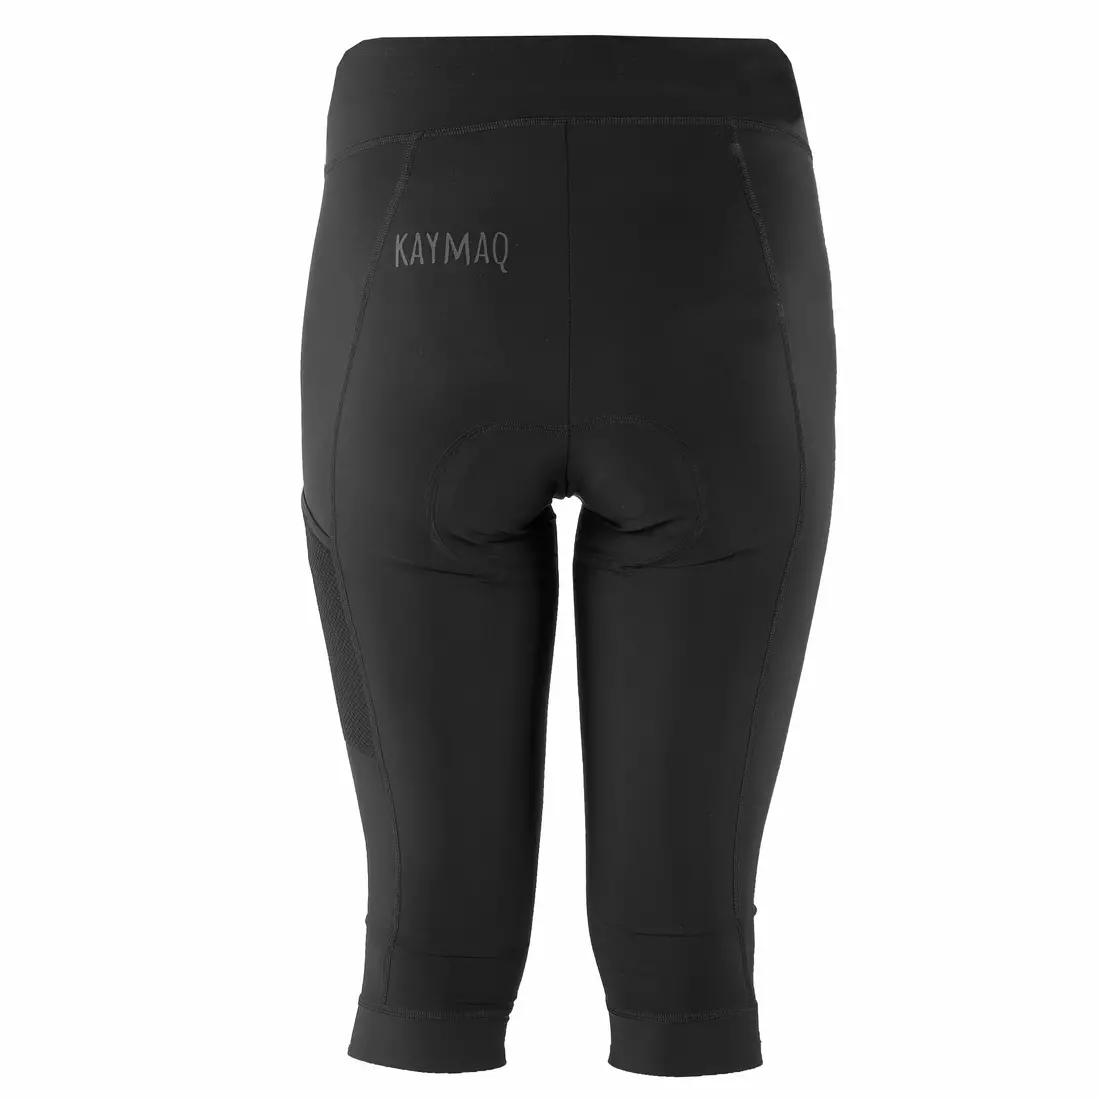 KAYMAQ women's cycling shorts 3/4,  Black ELKNICD802